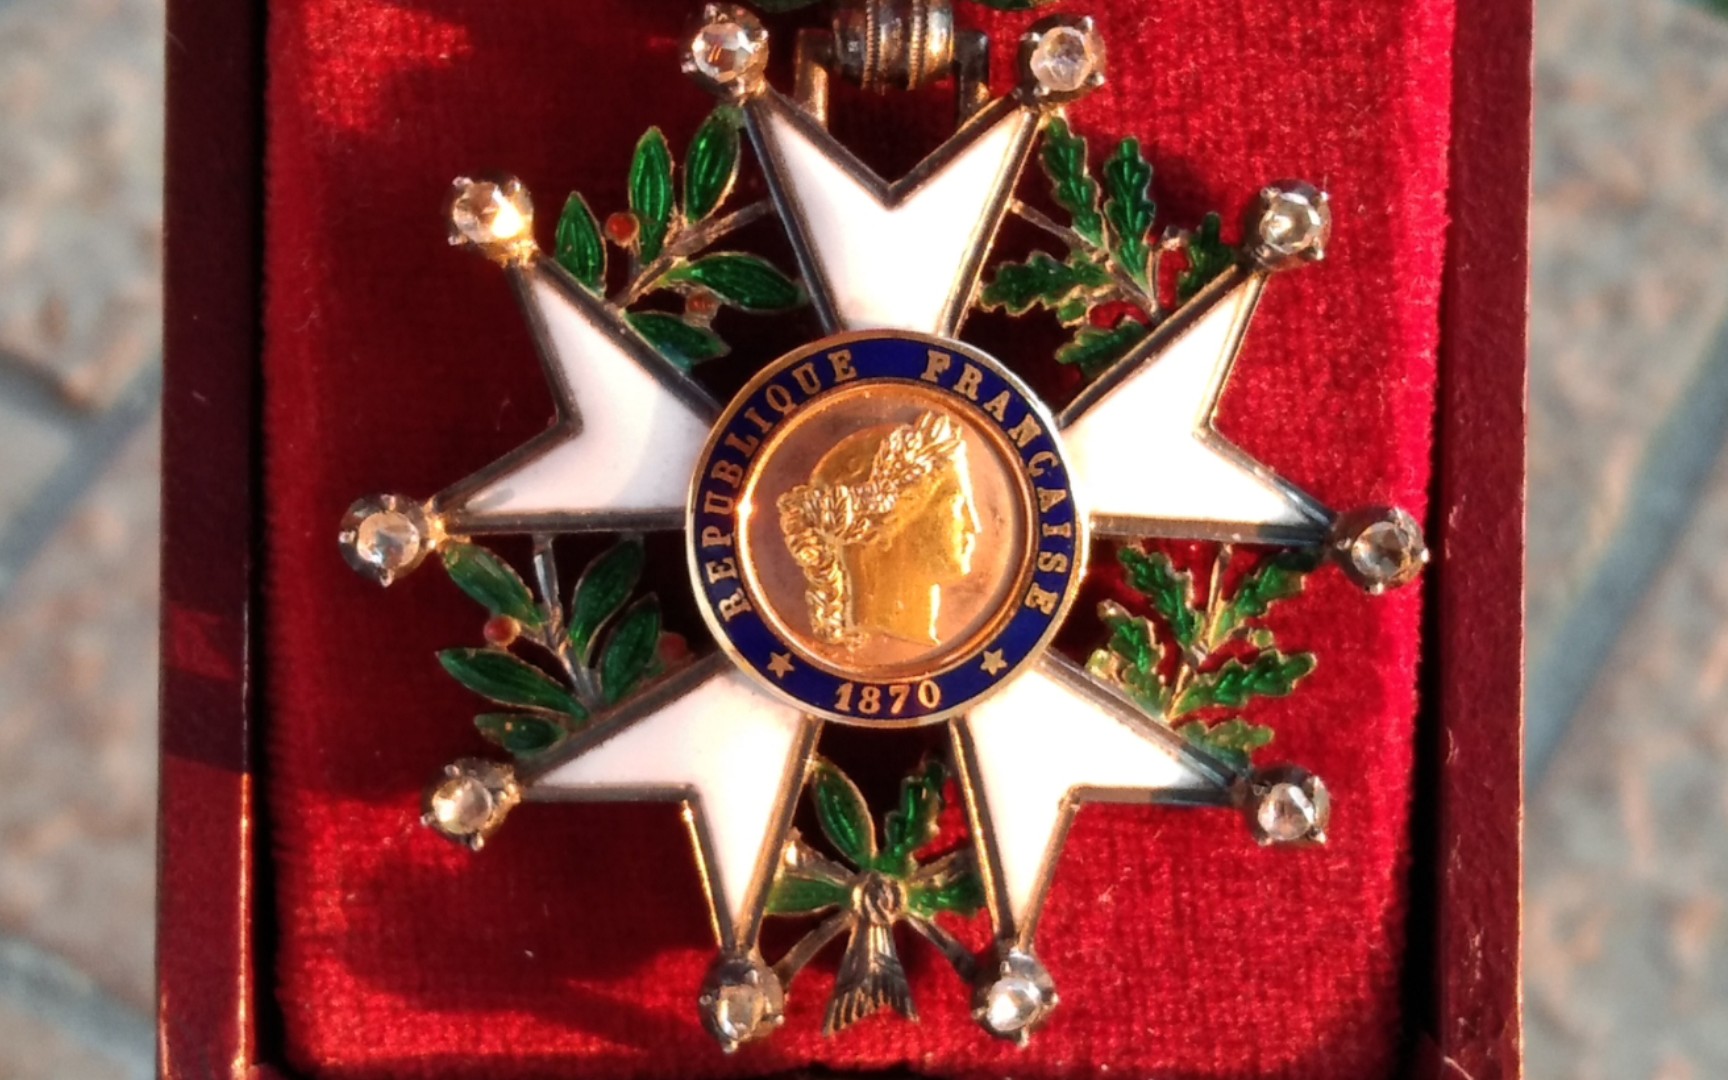 荣誉军团勋章及荣誉骑士团勋章博物馆图片